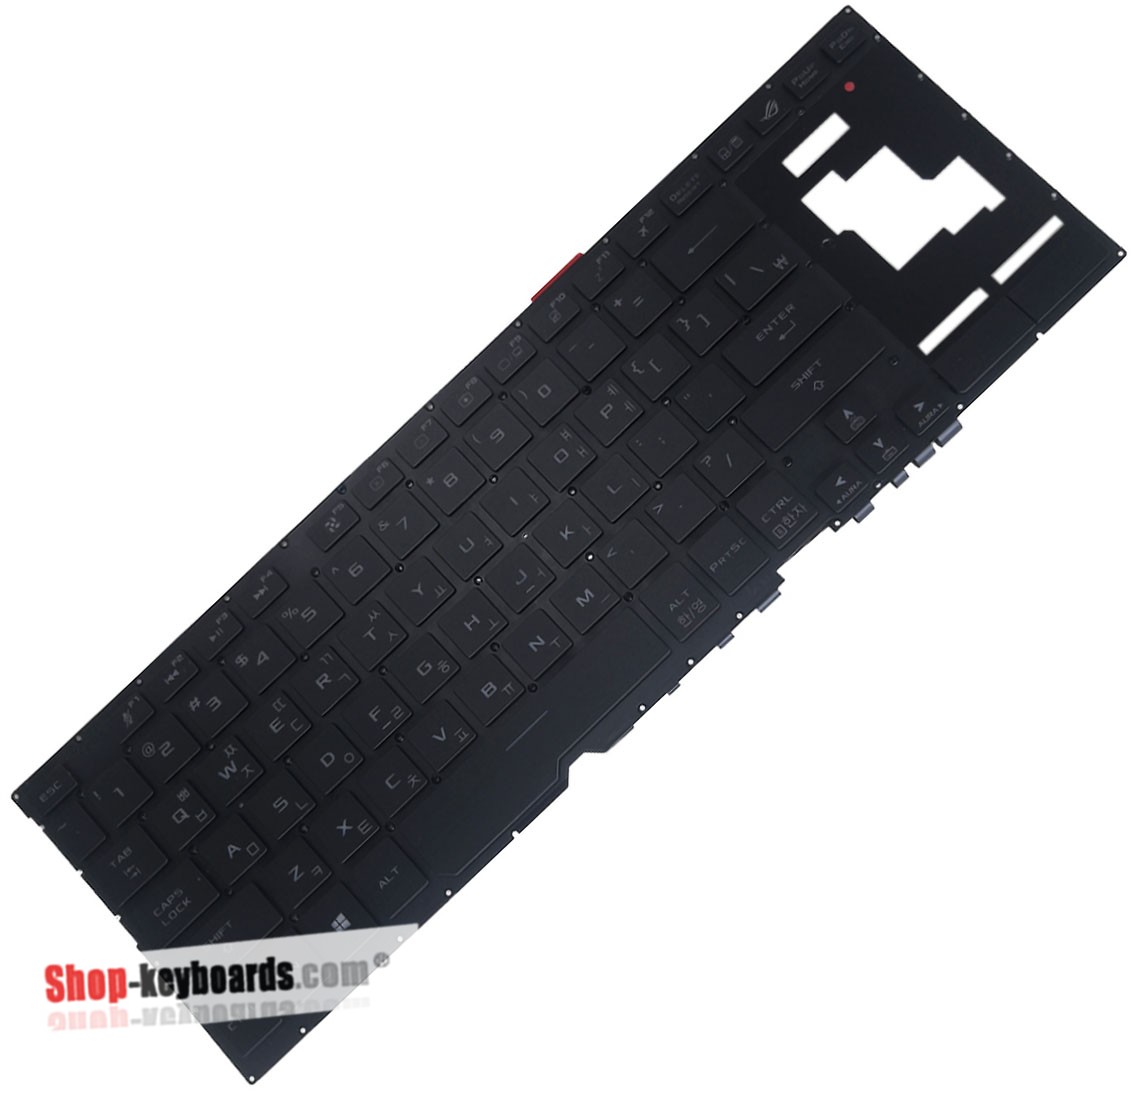 Asus ROG GX701LWS-HG002TS  Keyboard replacement